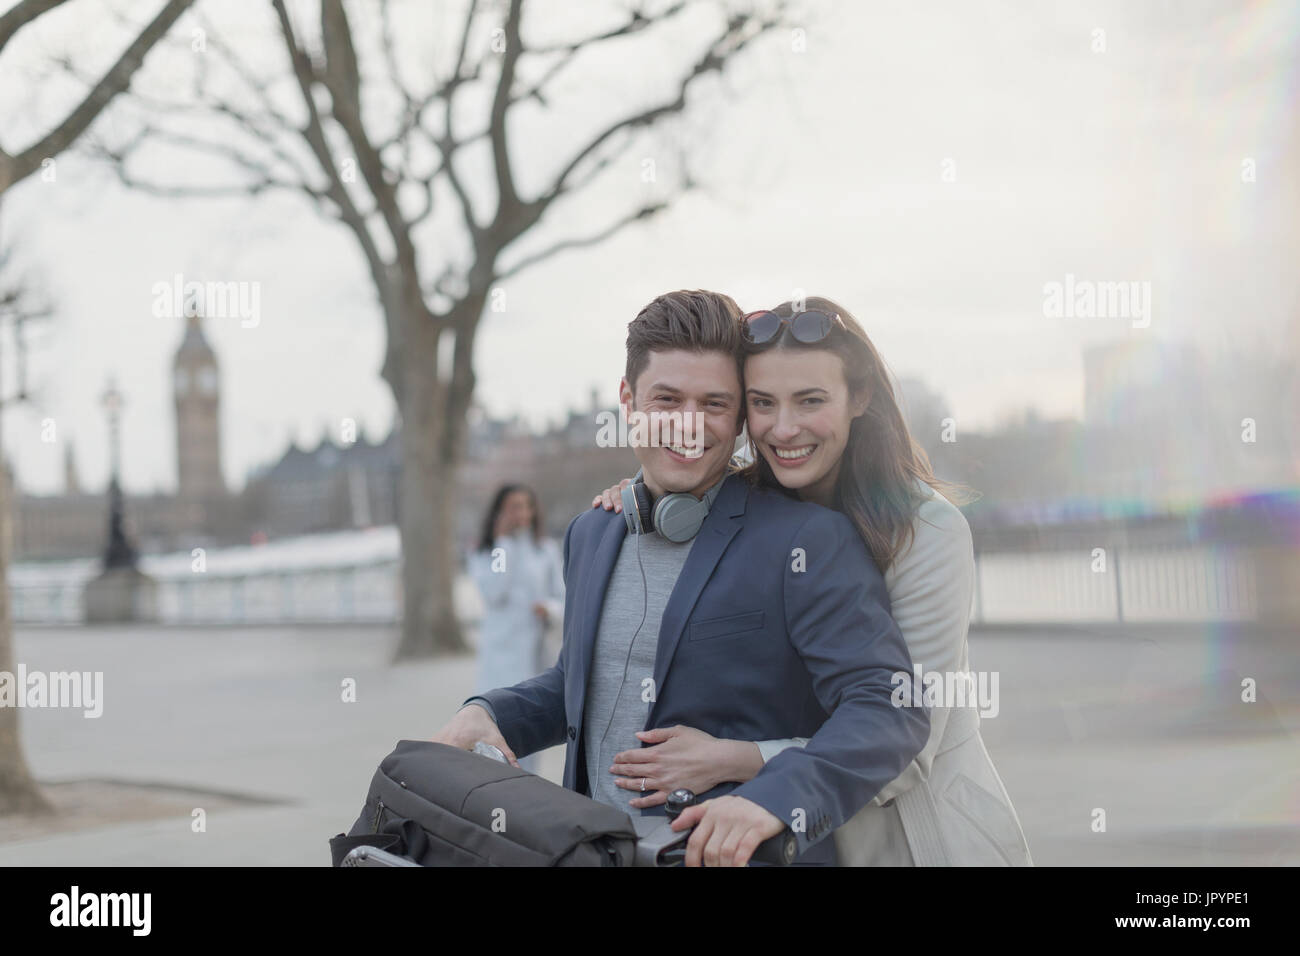 Porträt, Lächeln, umarmen paar Touristen mit dem Fahrrad im städtischen Park, London, UK Stockfoto